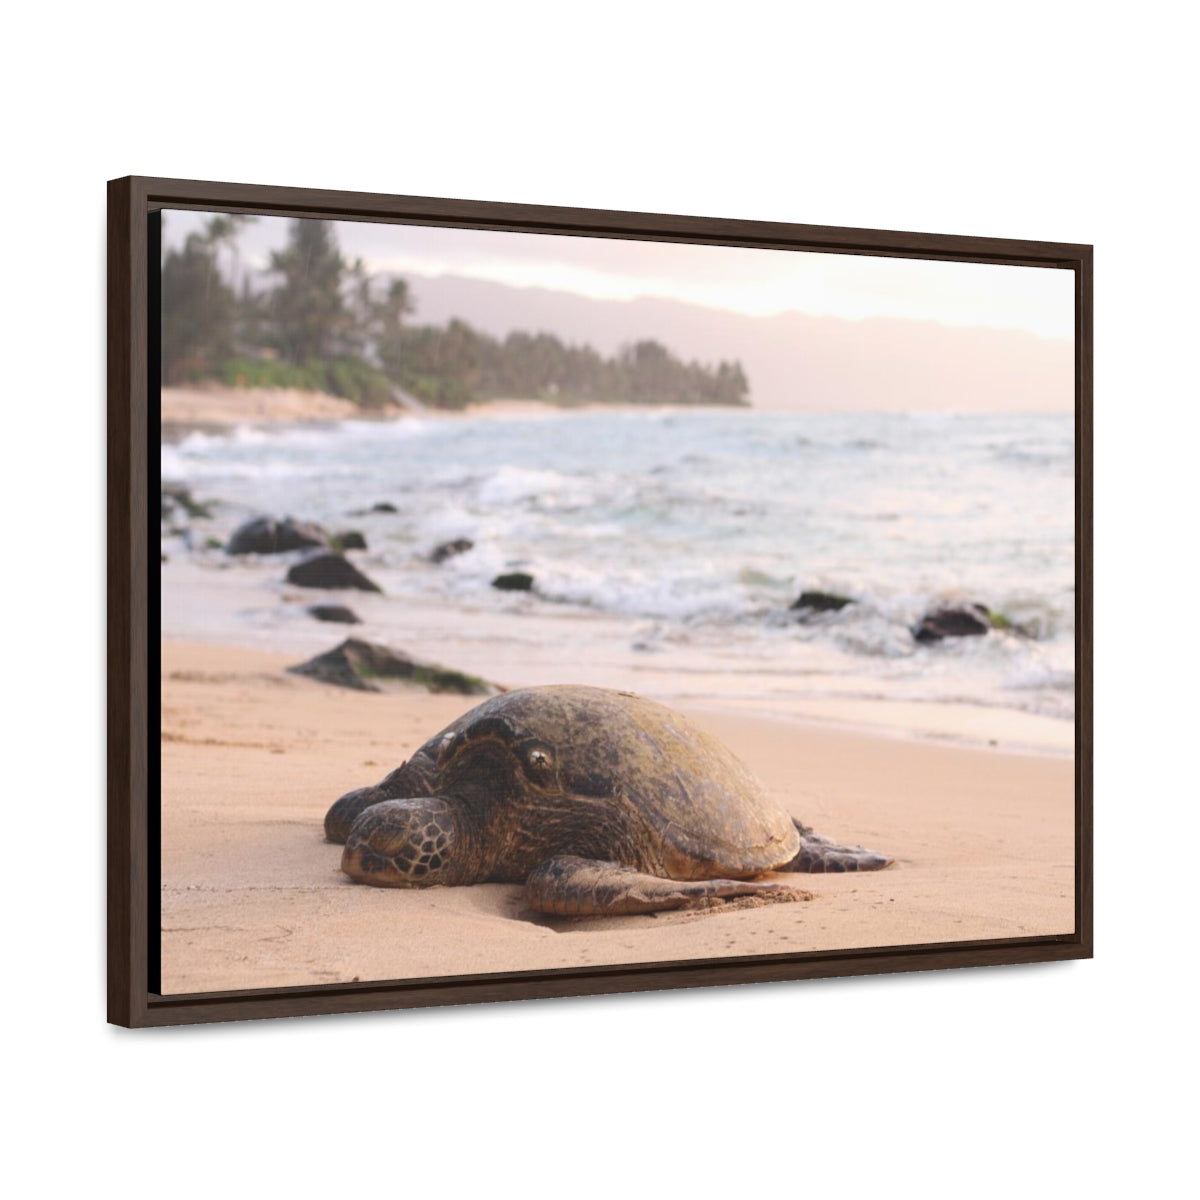 Sea Turtle on Beach Canvas Print